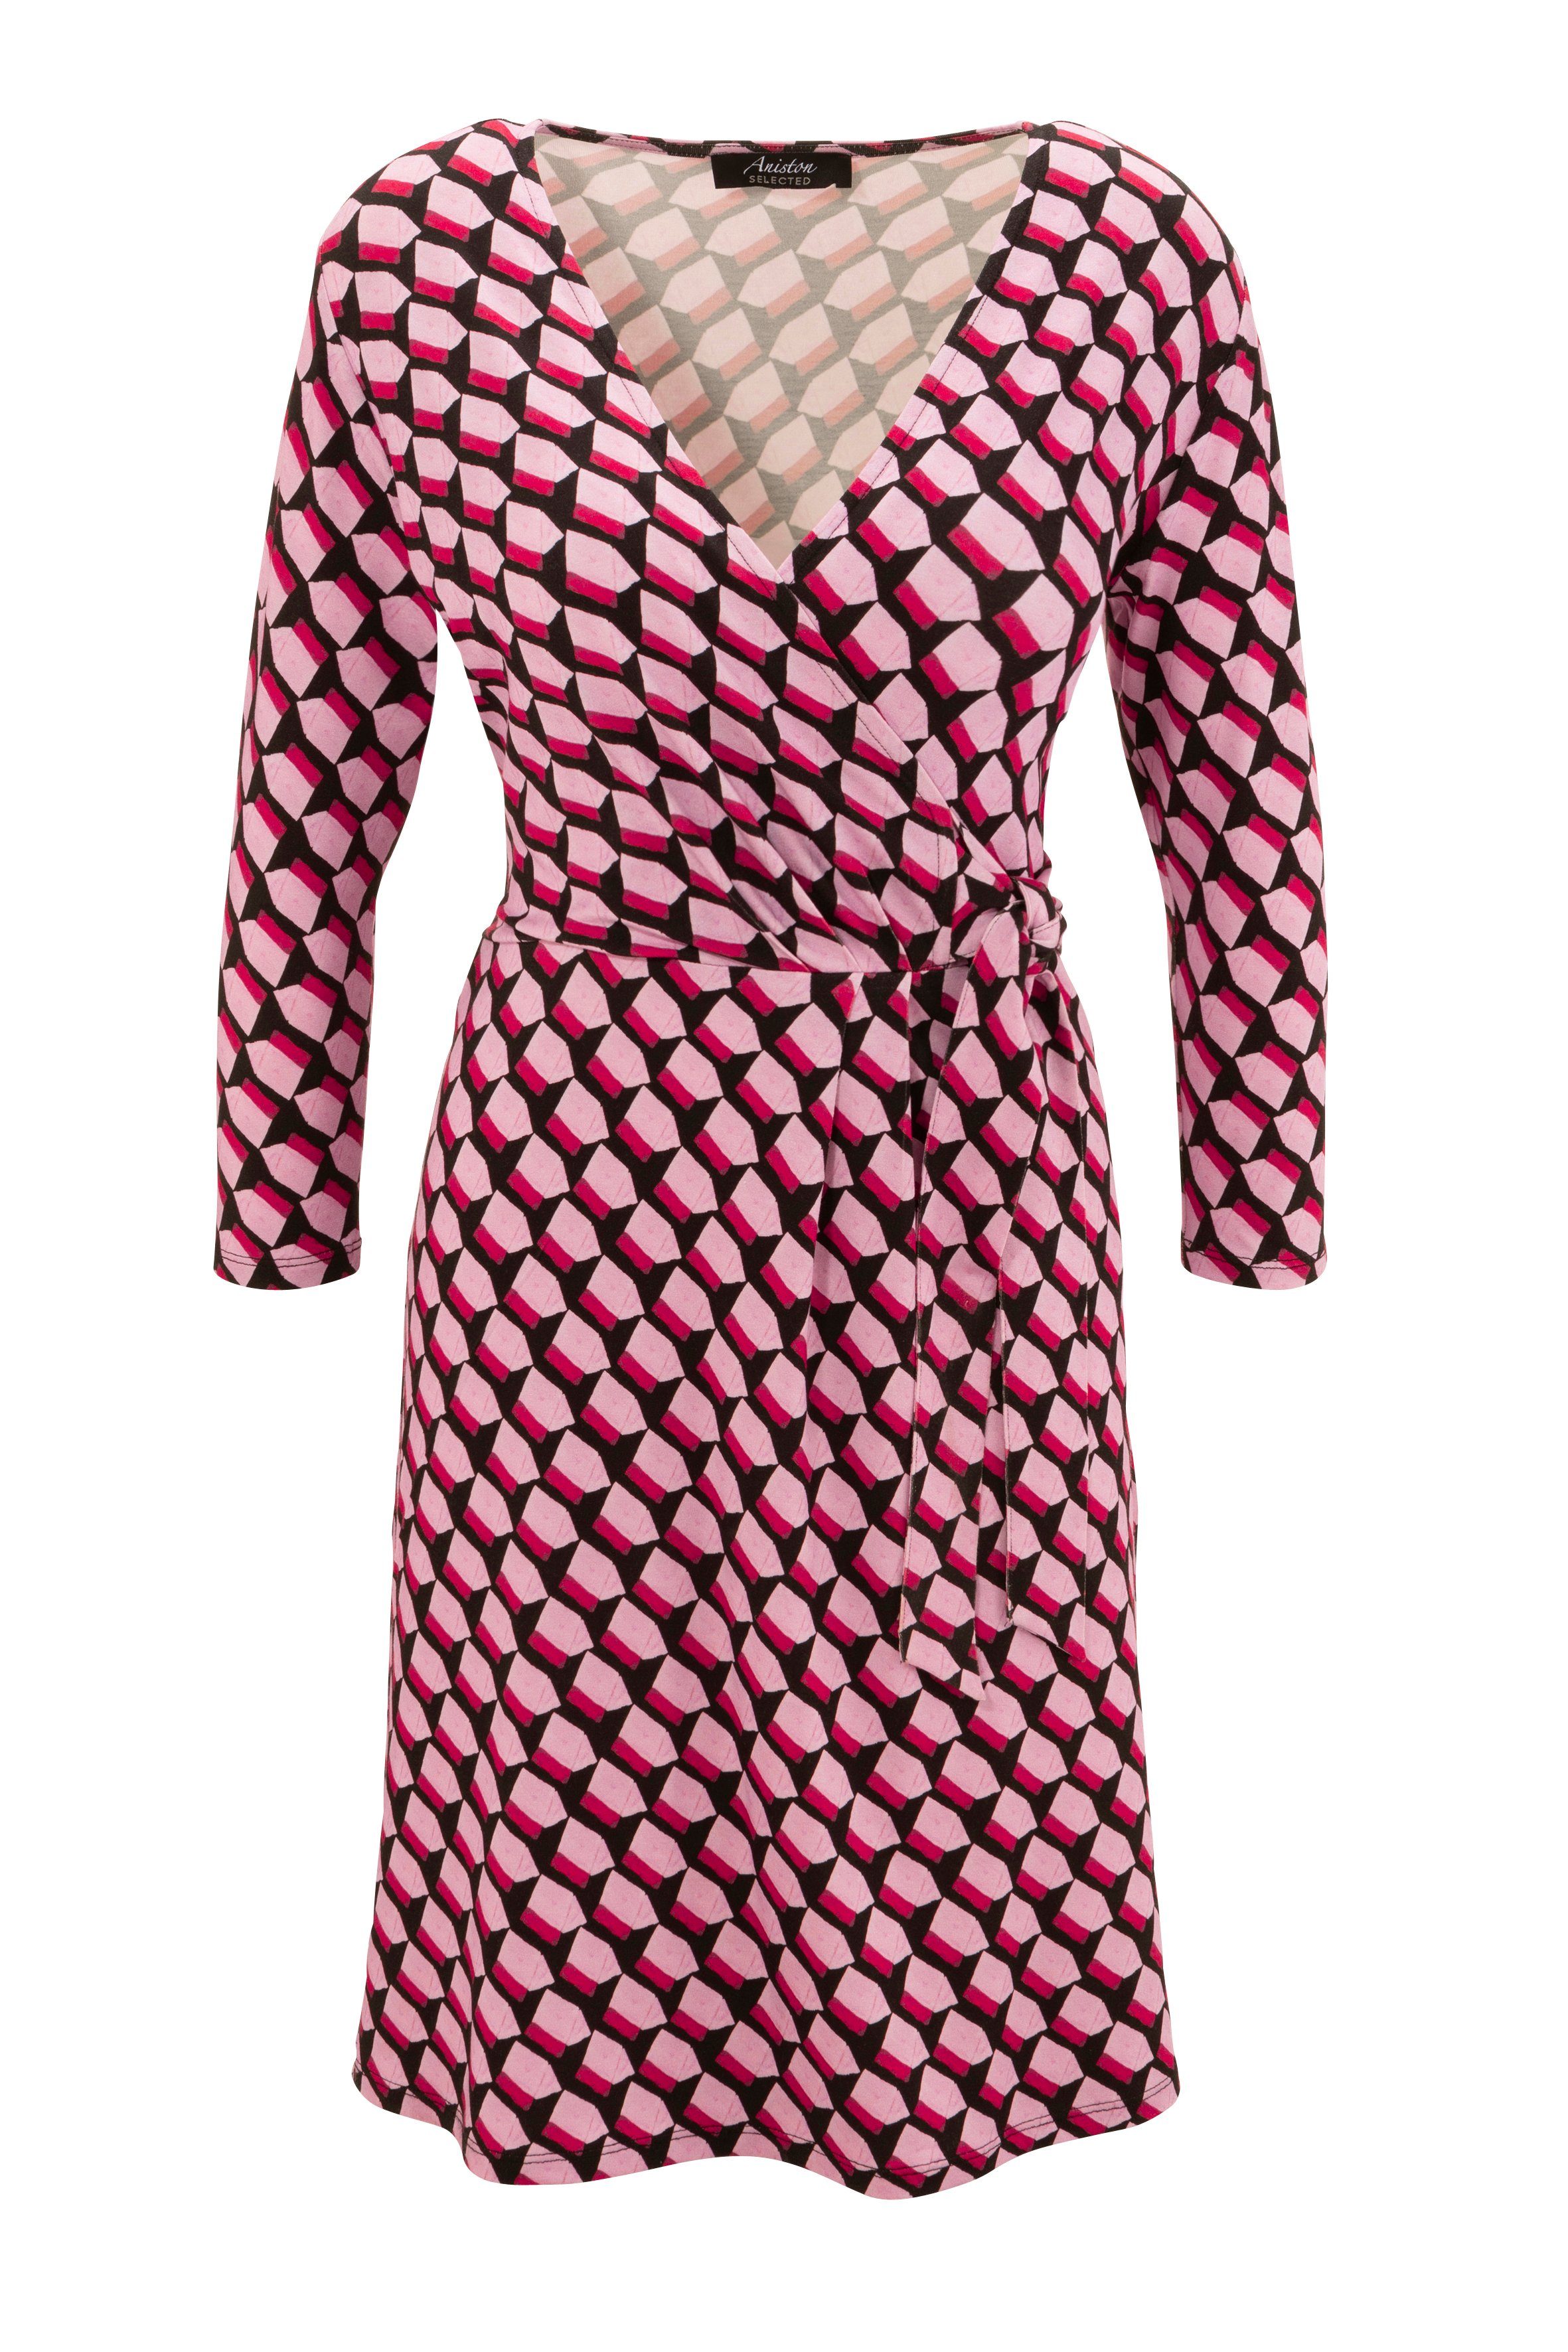 Aniston SELECTED Jerseykleid Wickeloptik in Allover-Muster Ausschnitt und mit